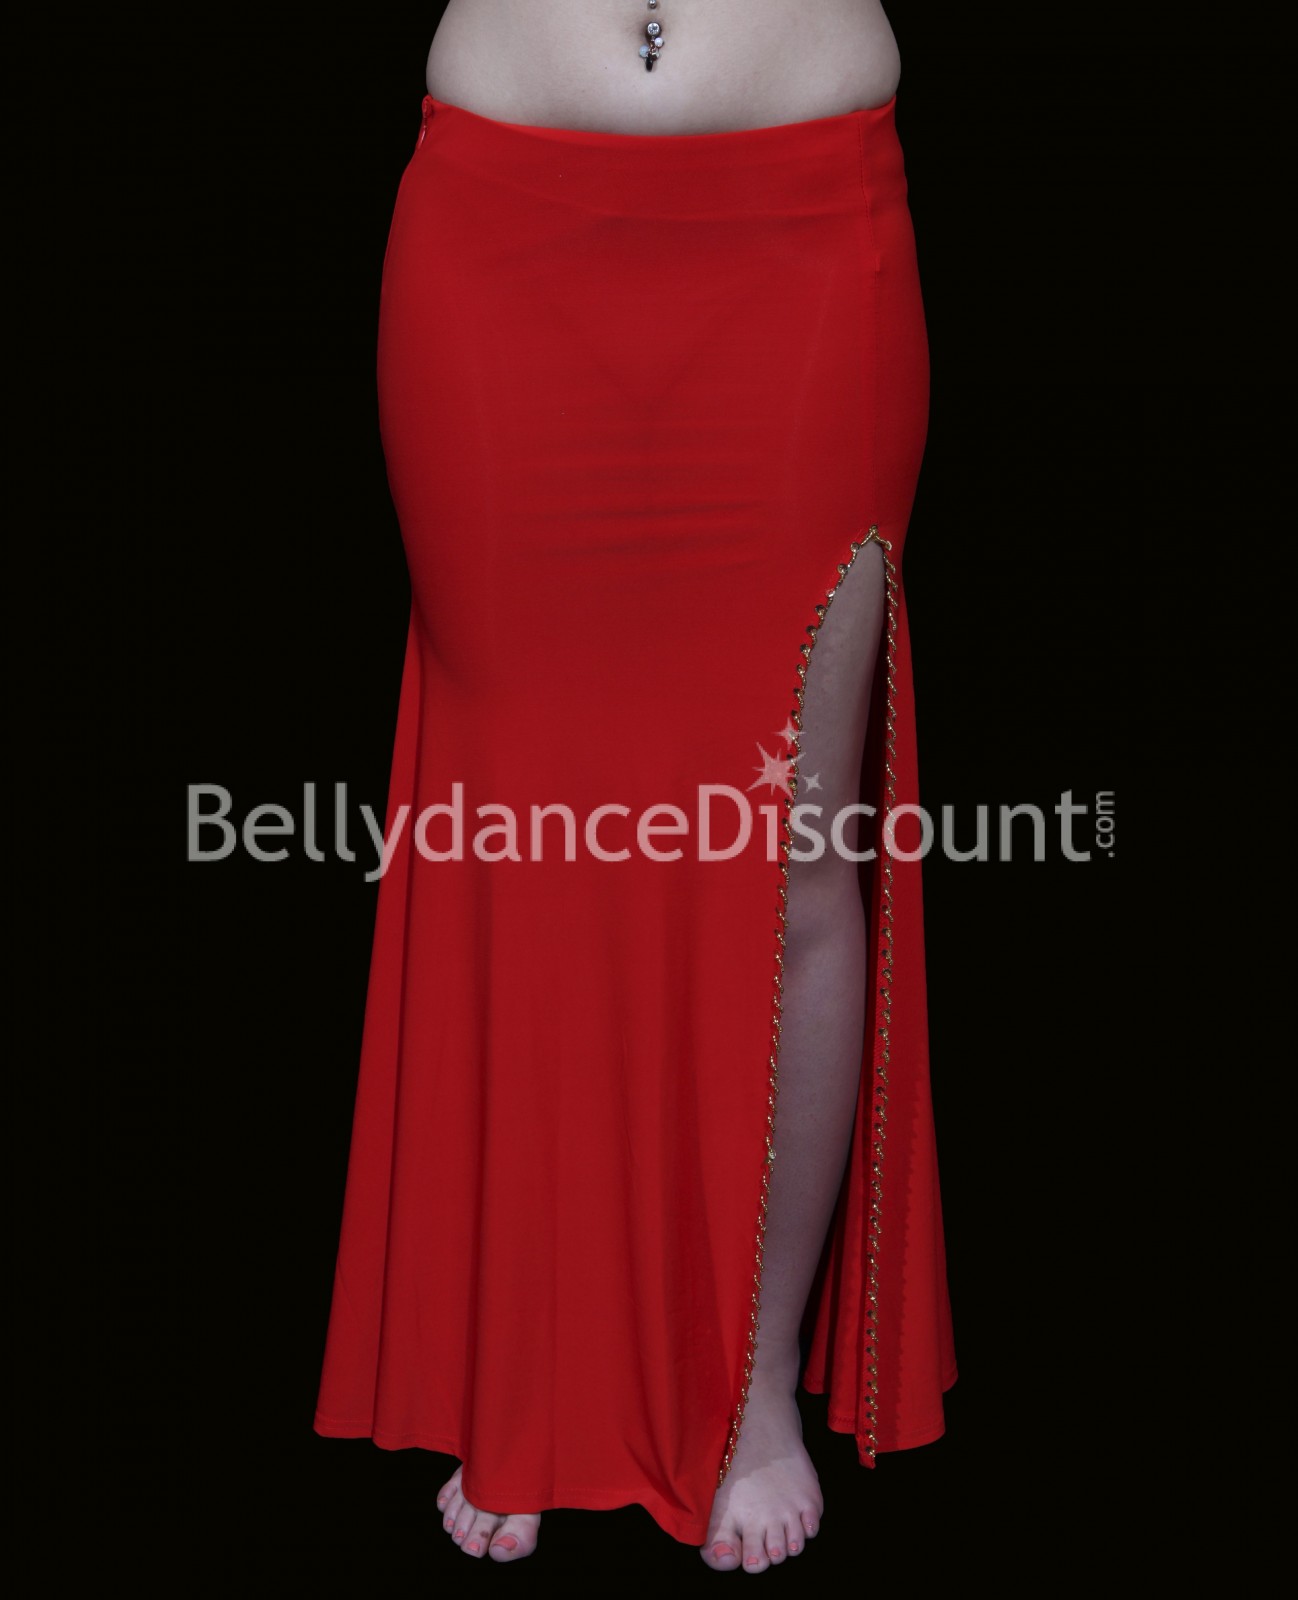 Red belly dance skirt - BellydanceDiscount.com